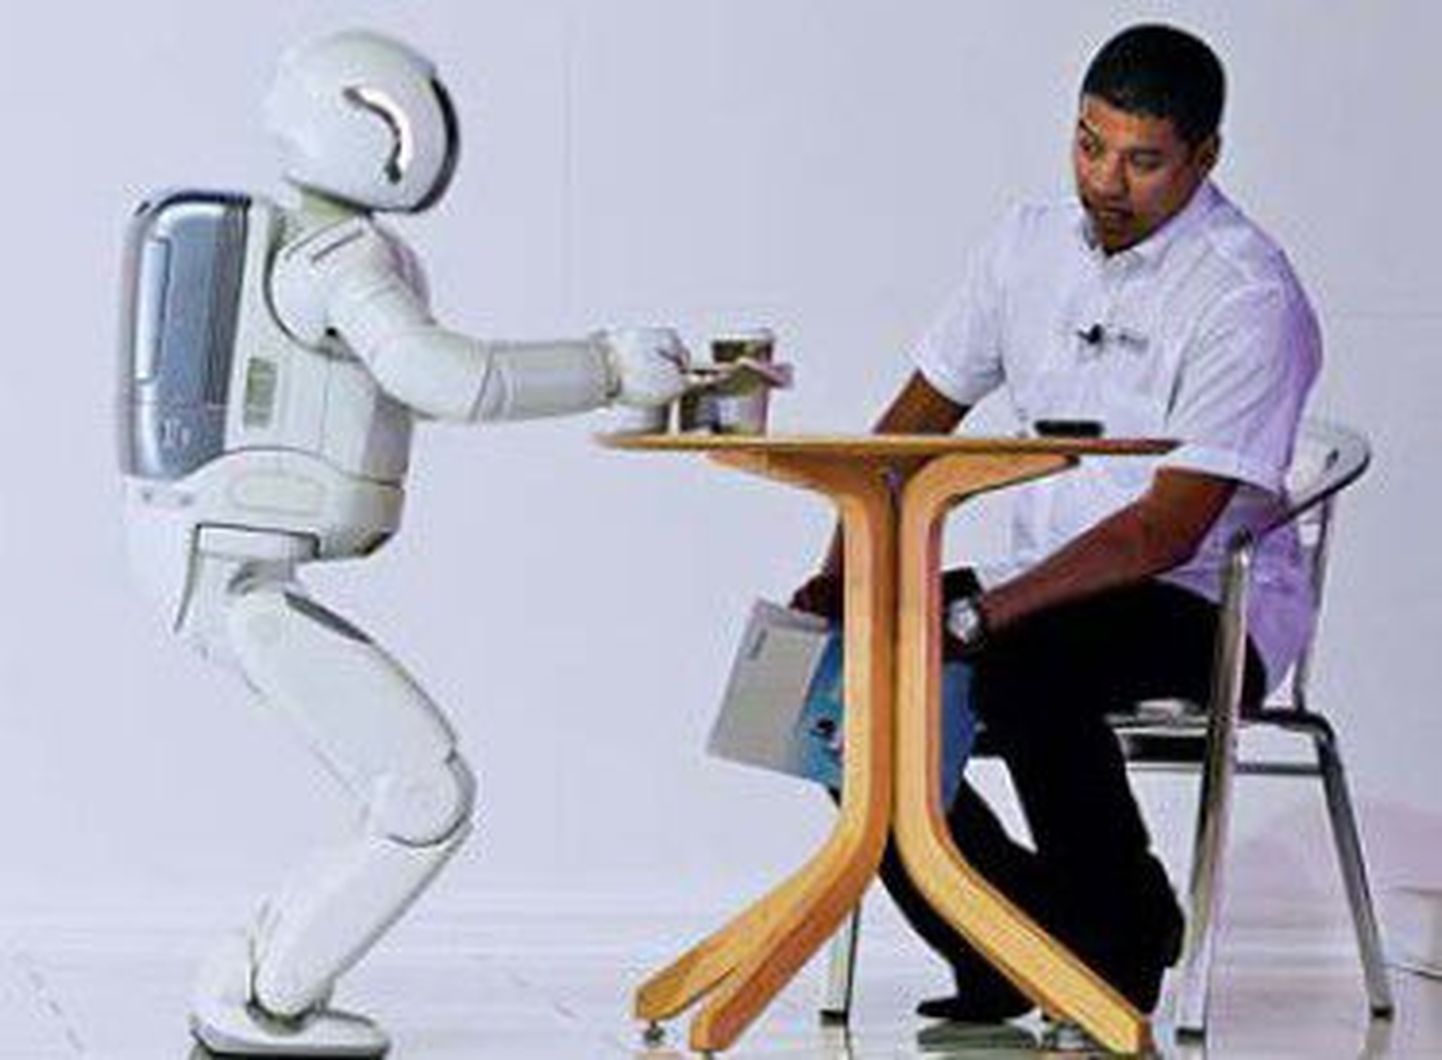 Робот Асимо производства компании Хонда сервирует чай на выставке в Йоханнесбурге.